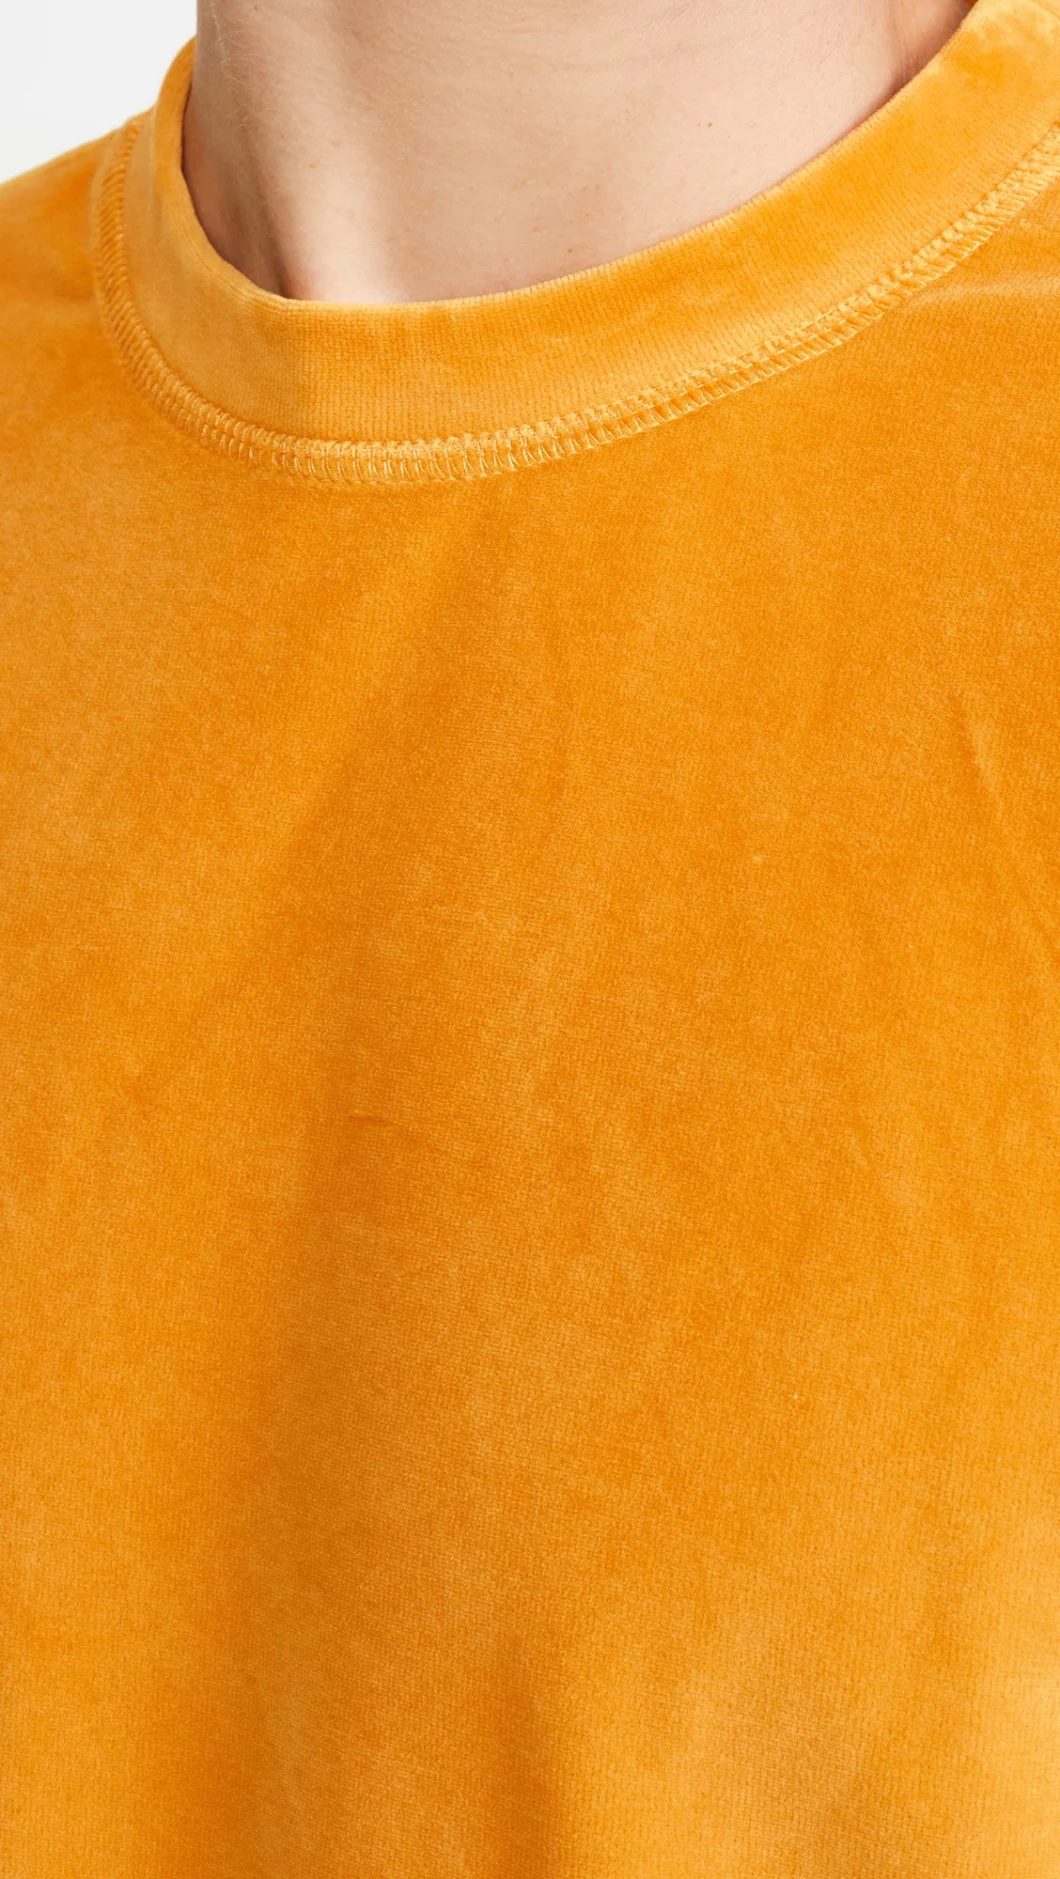 Fashion Men Plain Provide 3D Printing Sweatshirt Custom Logo Sweatshirts